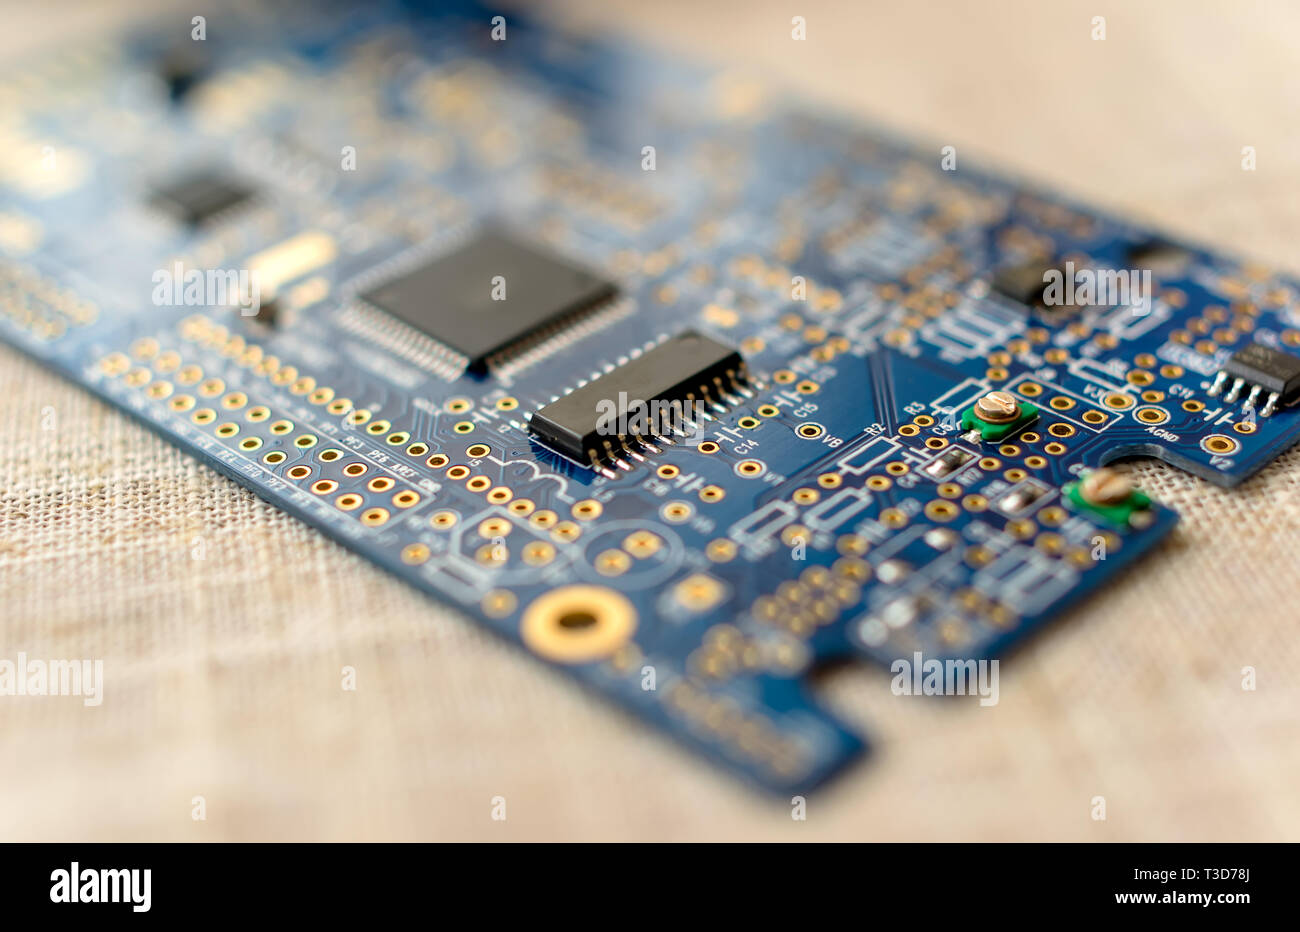 Circuitboard mit SMD-Widerstände Mikrochips und elektronische Komponenten - selektive Fokus Stockfoto